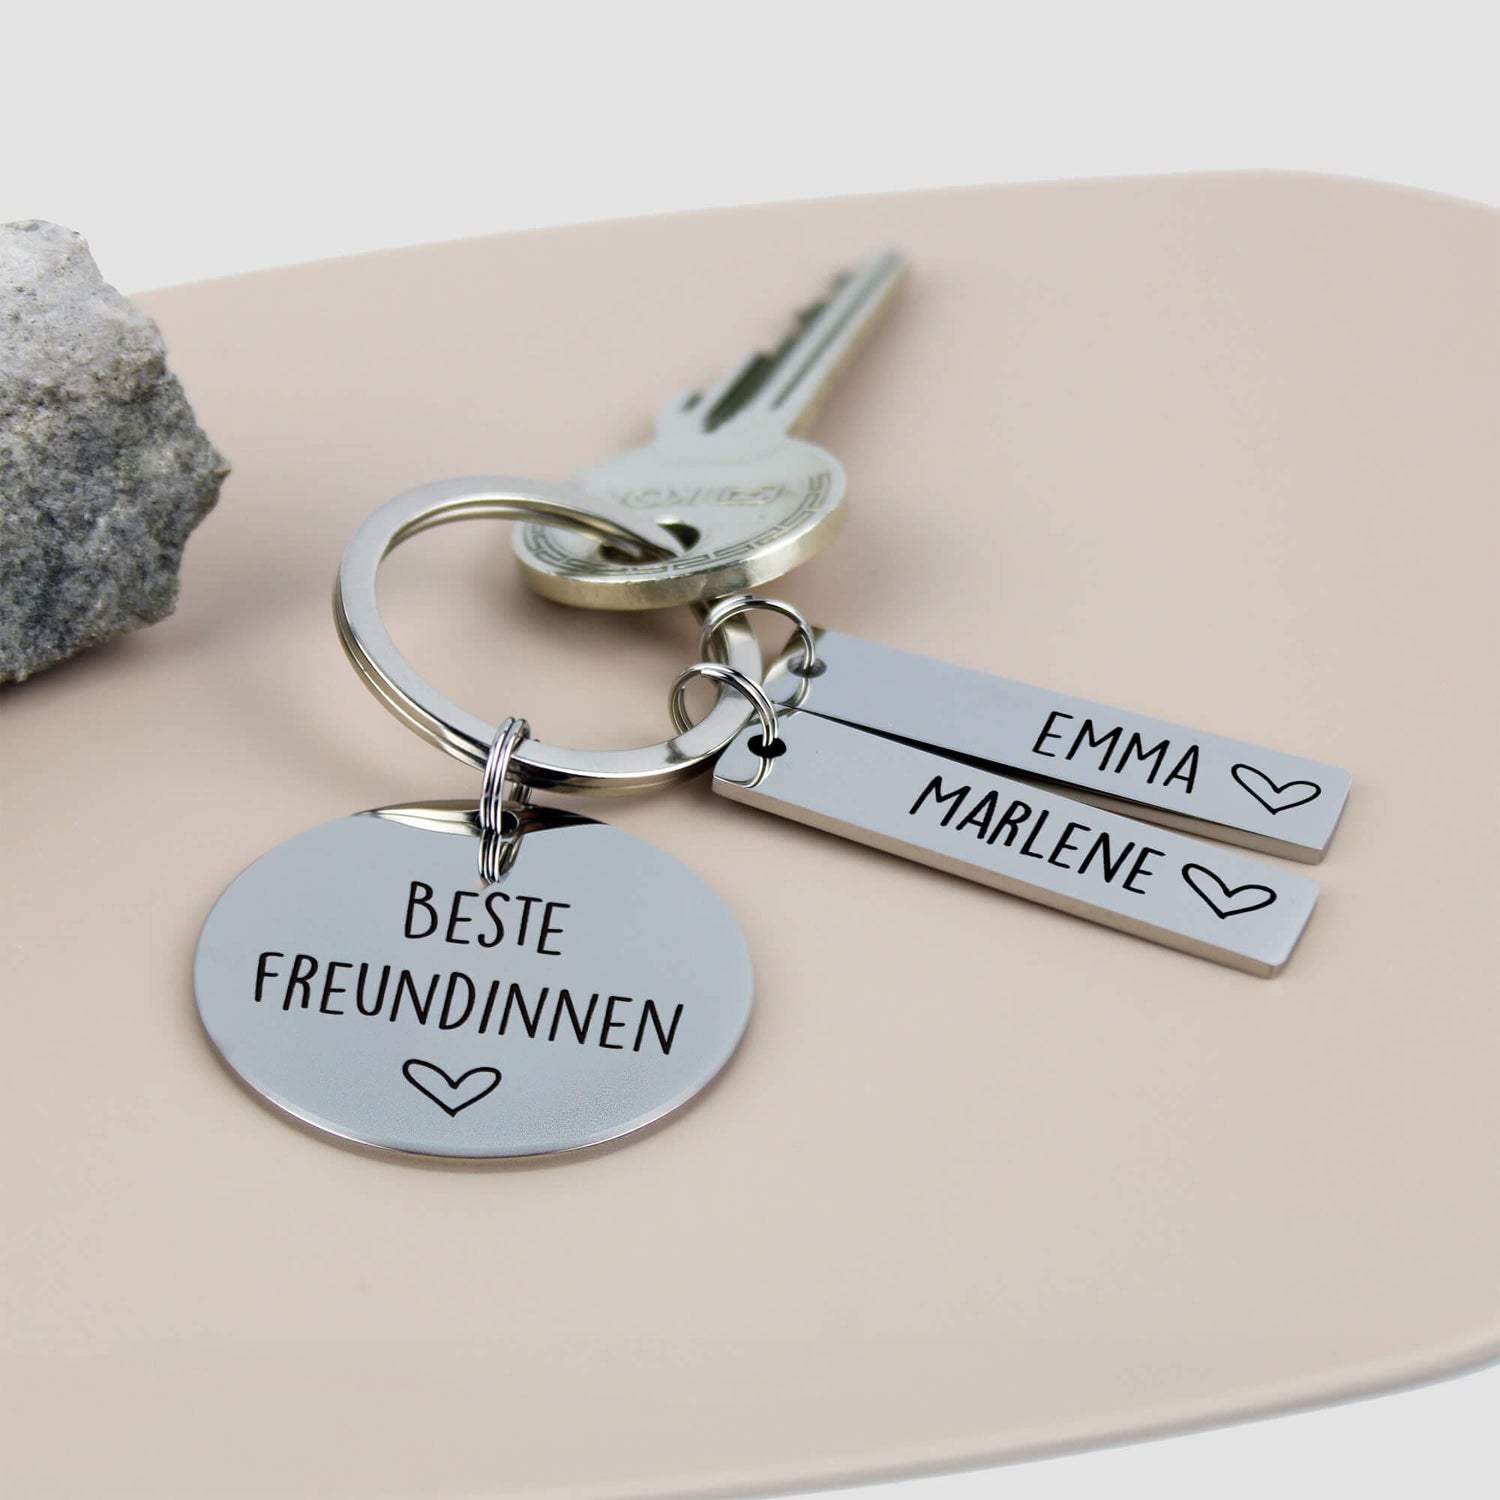 Einzigartiges Geschenk: Personalisierte Schlüsselanhänger aus hochwertigem Edelstahl mit den Namen der besten Freundinnen - Create4me